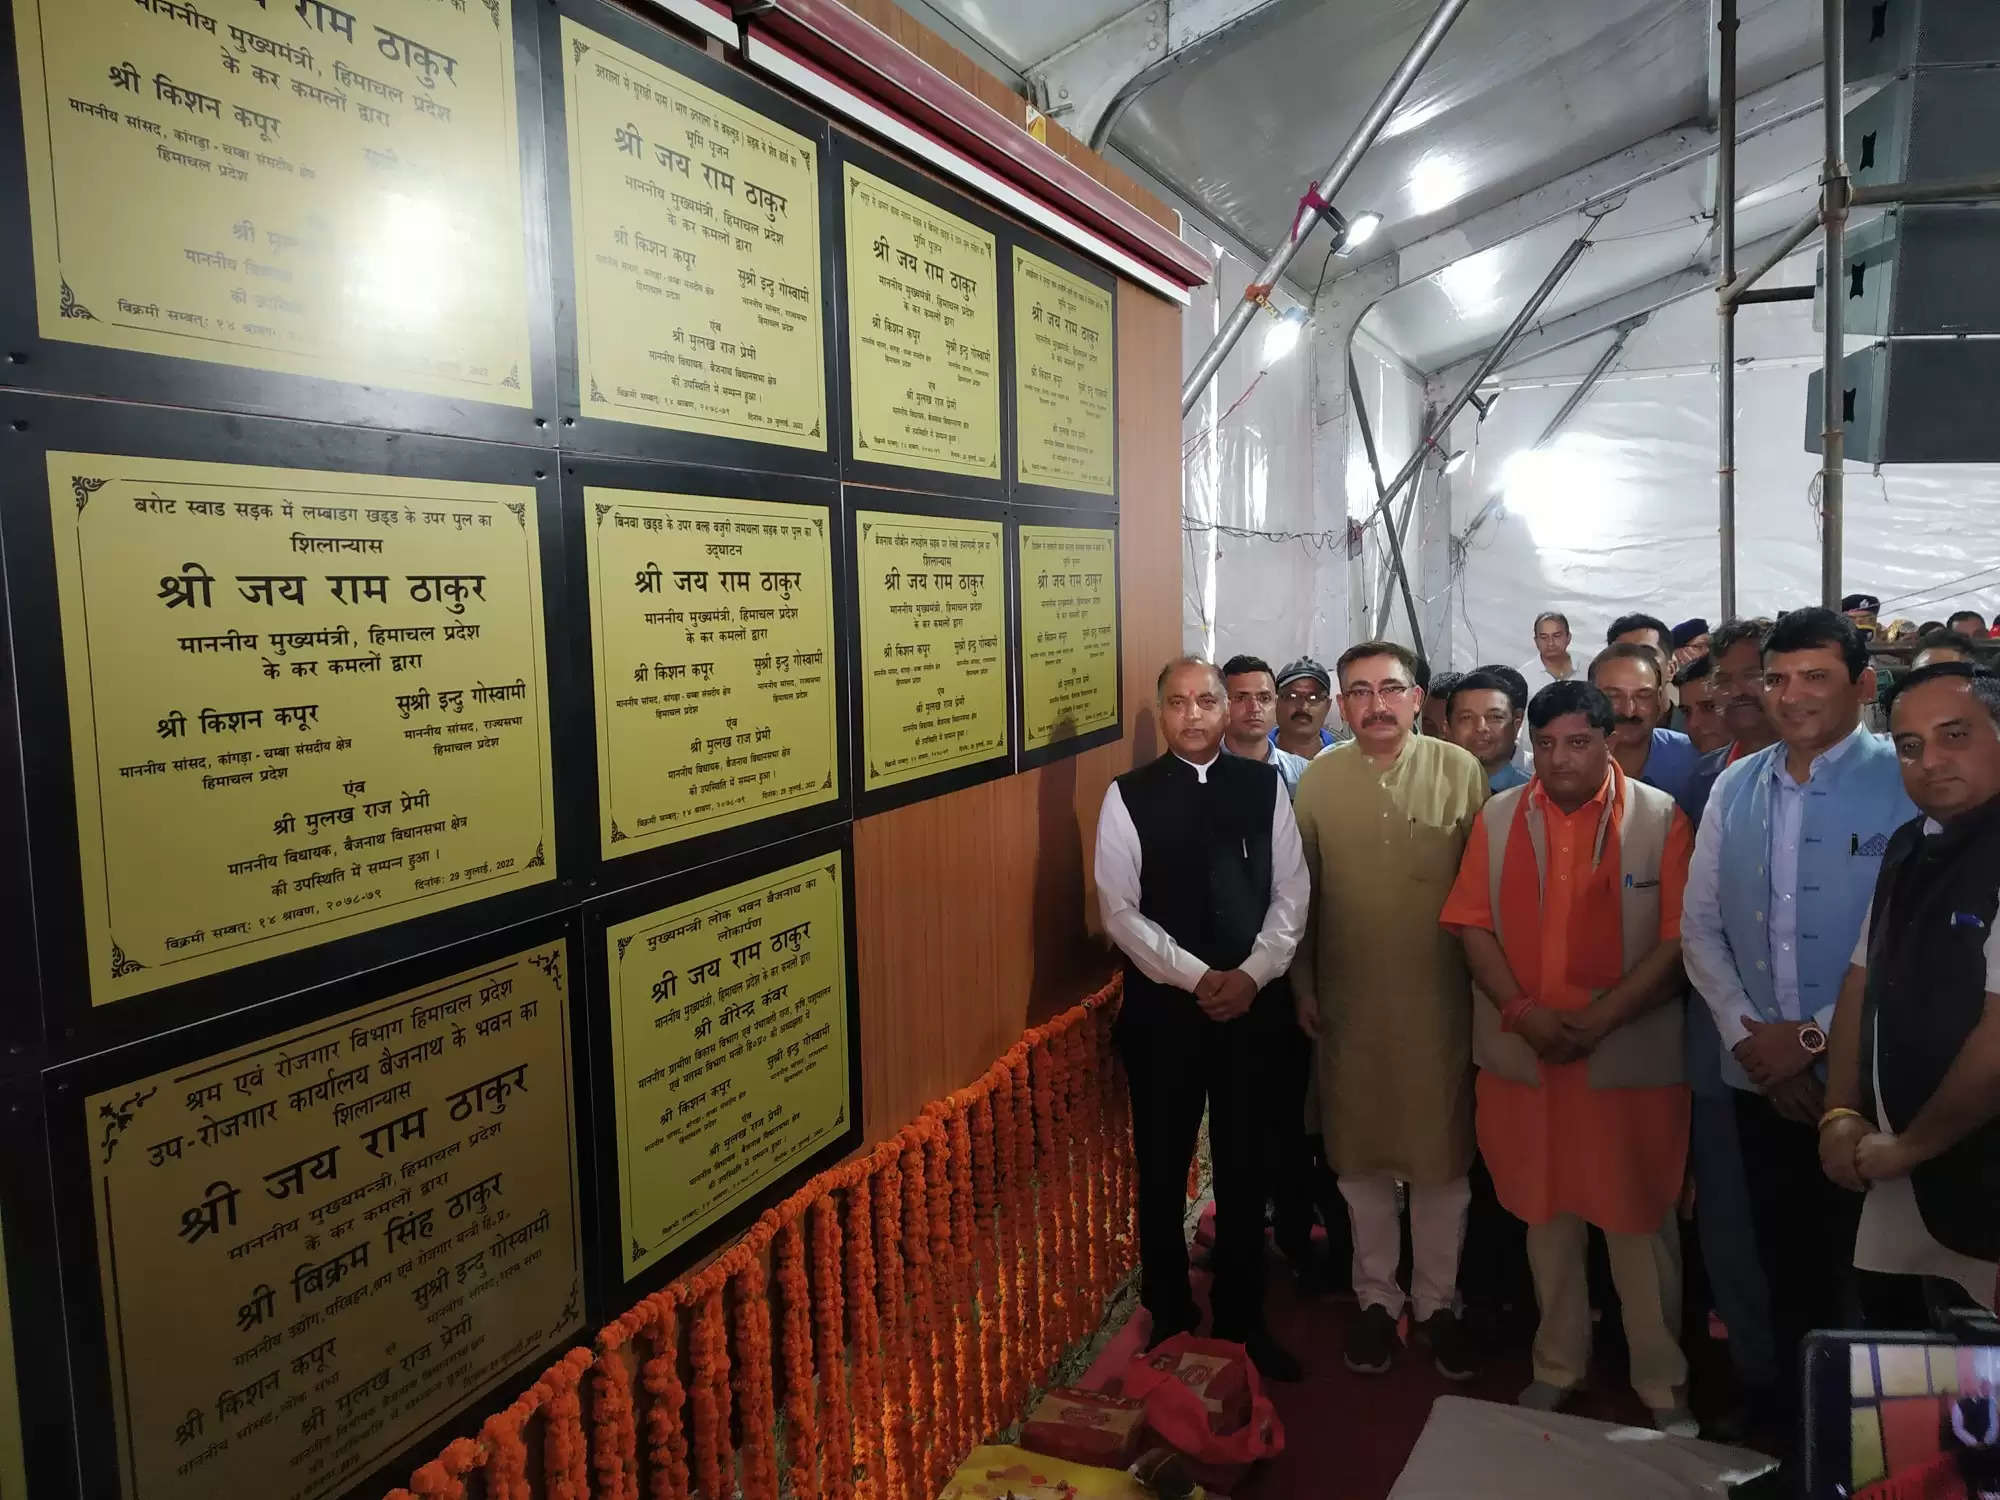 अरुणाचल प्रदेश में भूस्खलन की चपेट में आने से शहीद हुए बैजनाथ के राकेश सिंह के गांव महेशगढ़ की सड़क का नाम अब शहीद राकेश सिंह के नाम पर होगा। मुख्यमंत्री जयराम टाकुर ने शुक्रवार को इसकी घोषणा कर दी है। जयराम ठाकुर शुक्रवार को बैजनाथ के इंदिरा गांधी स्टेडियम में मुख्यमंत्री शगुन योजना के अंतर्गत राज्य स्तरीय लाभार्थी सम्मान समारोह में पहुंचे थे। 